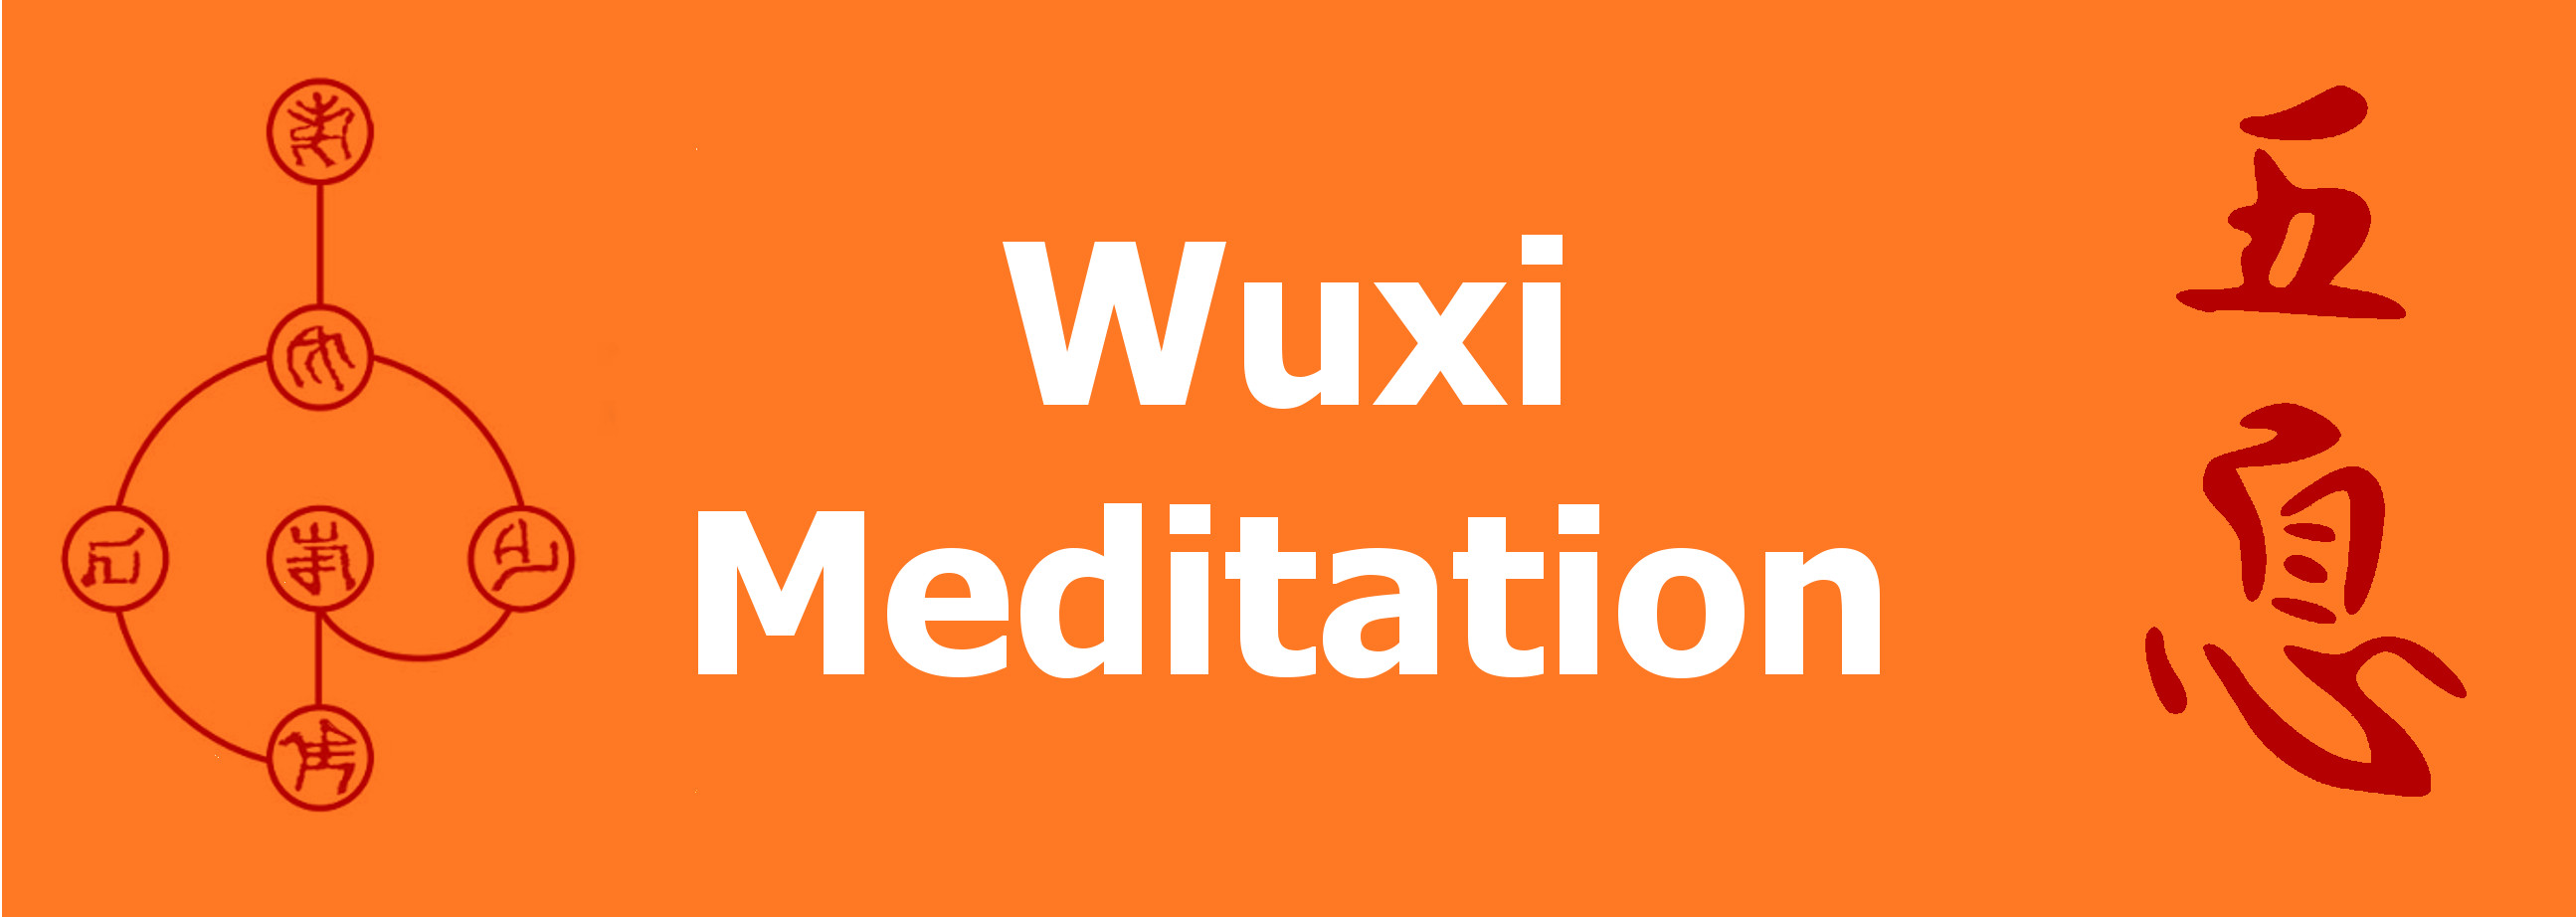 WUXI MEDITATION